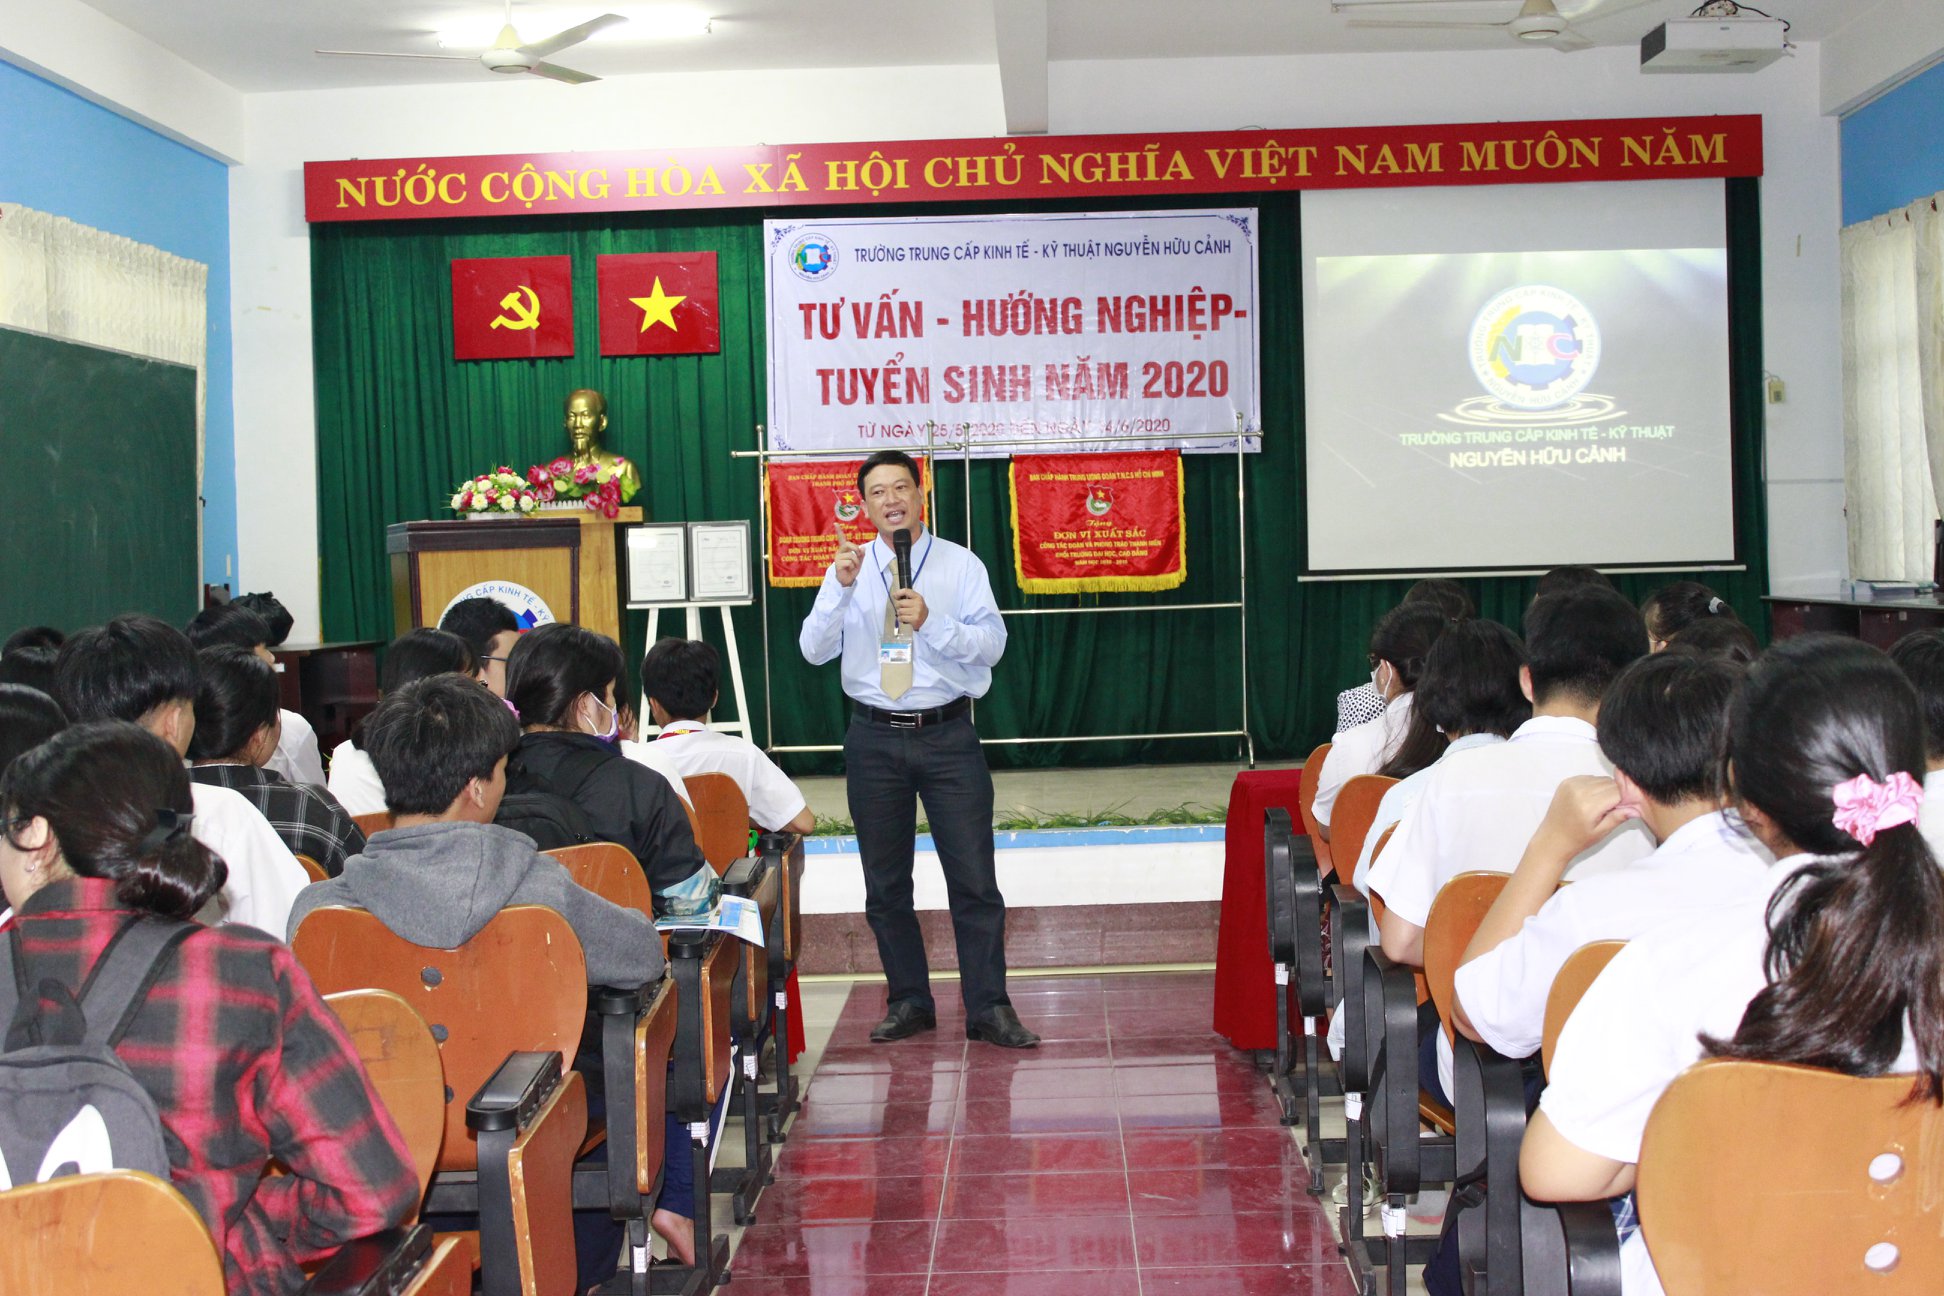 Đón tiếp học sinh trường THCS Lê Văn Hưu và THCS Nguyễn Hiền đến trường tham dự "Tư vấn - Hướng nghiệp - Tuyển sinh" năm 2020